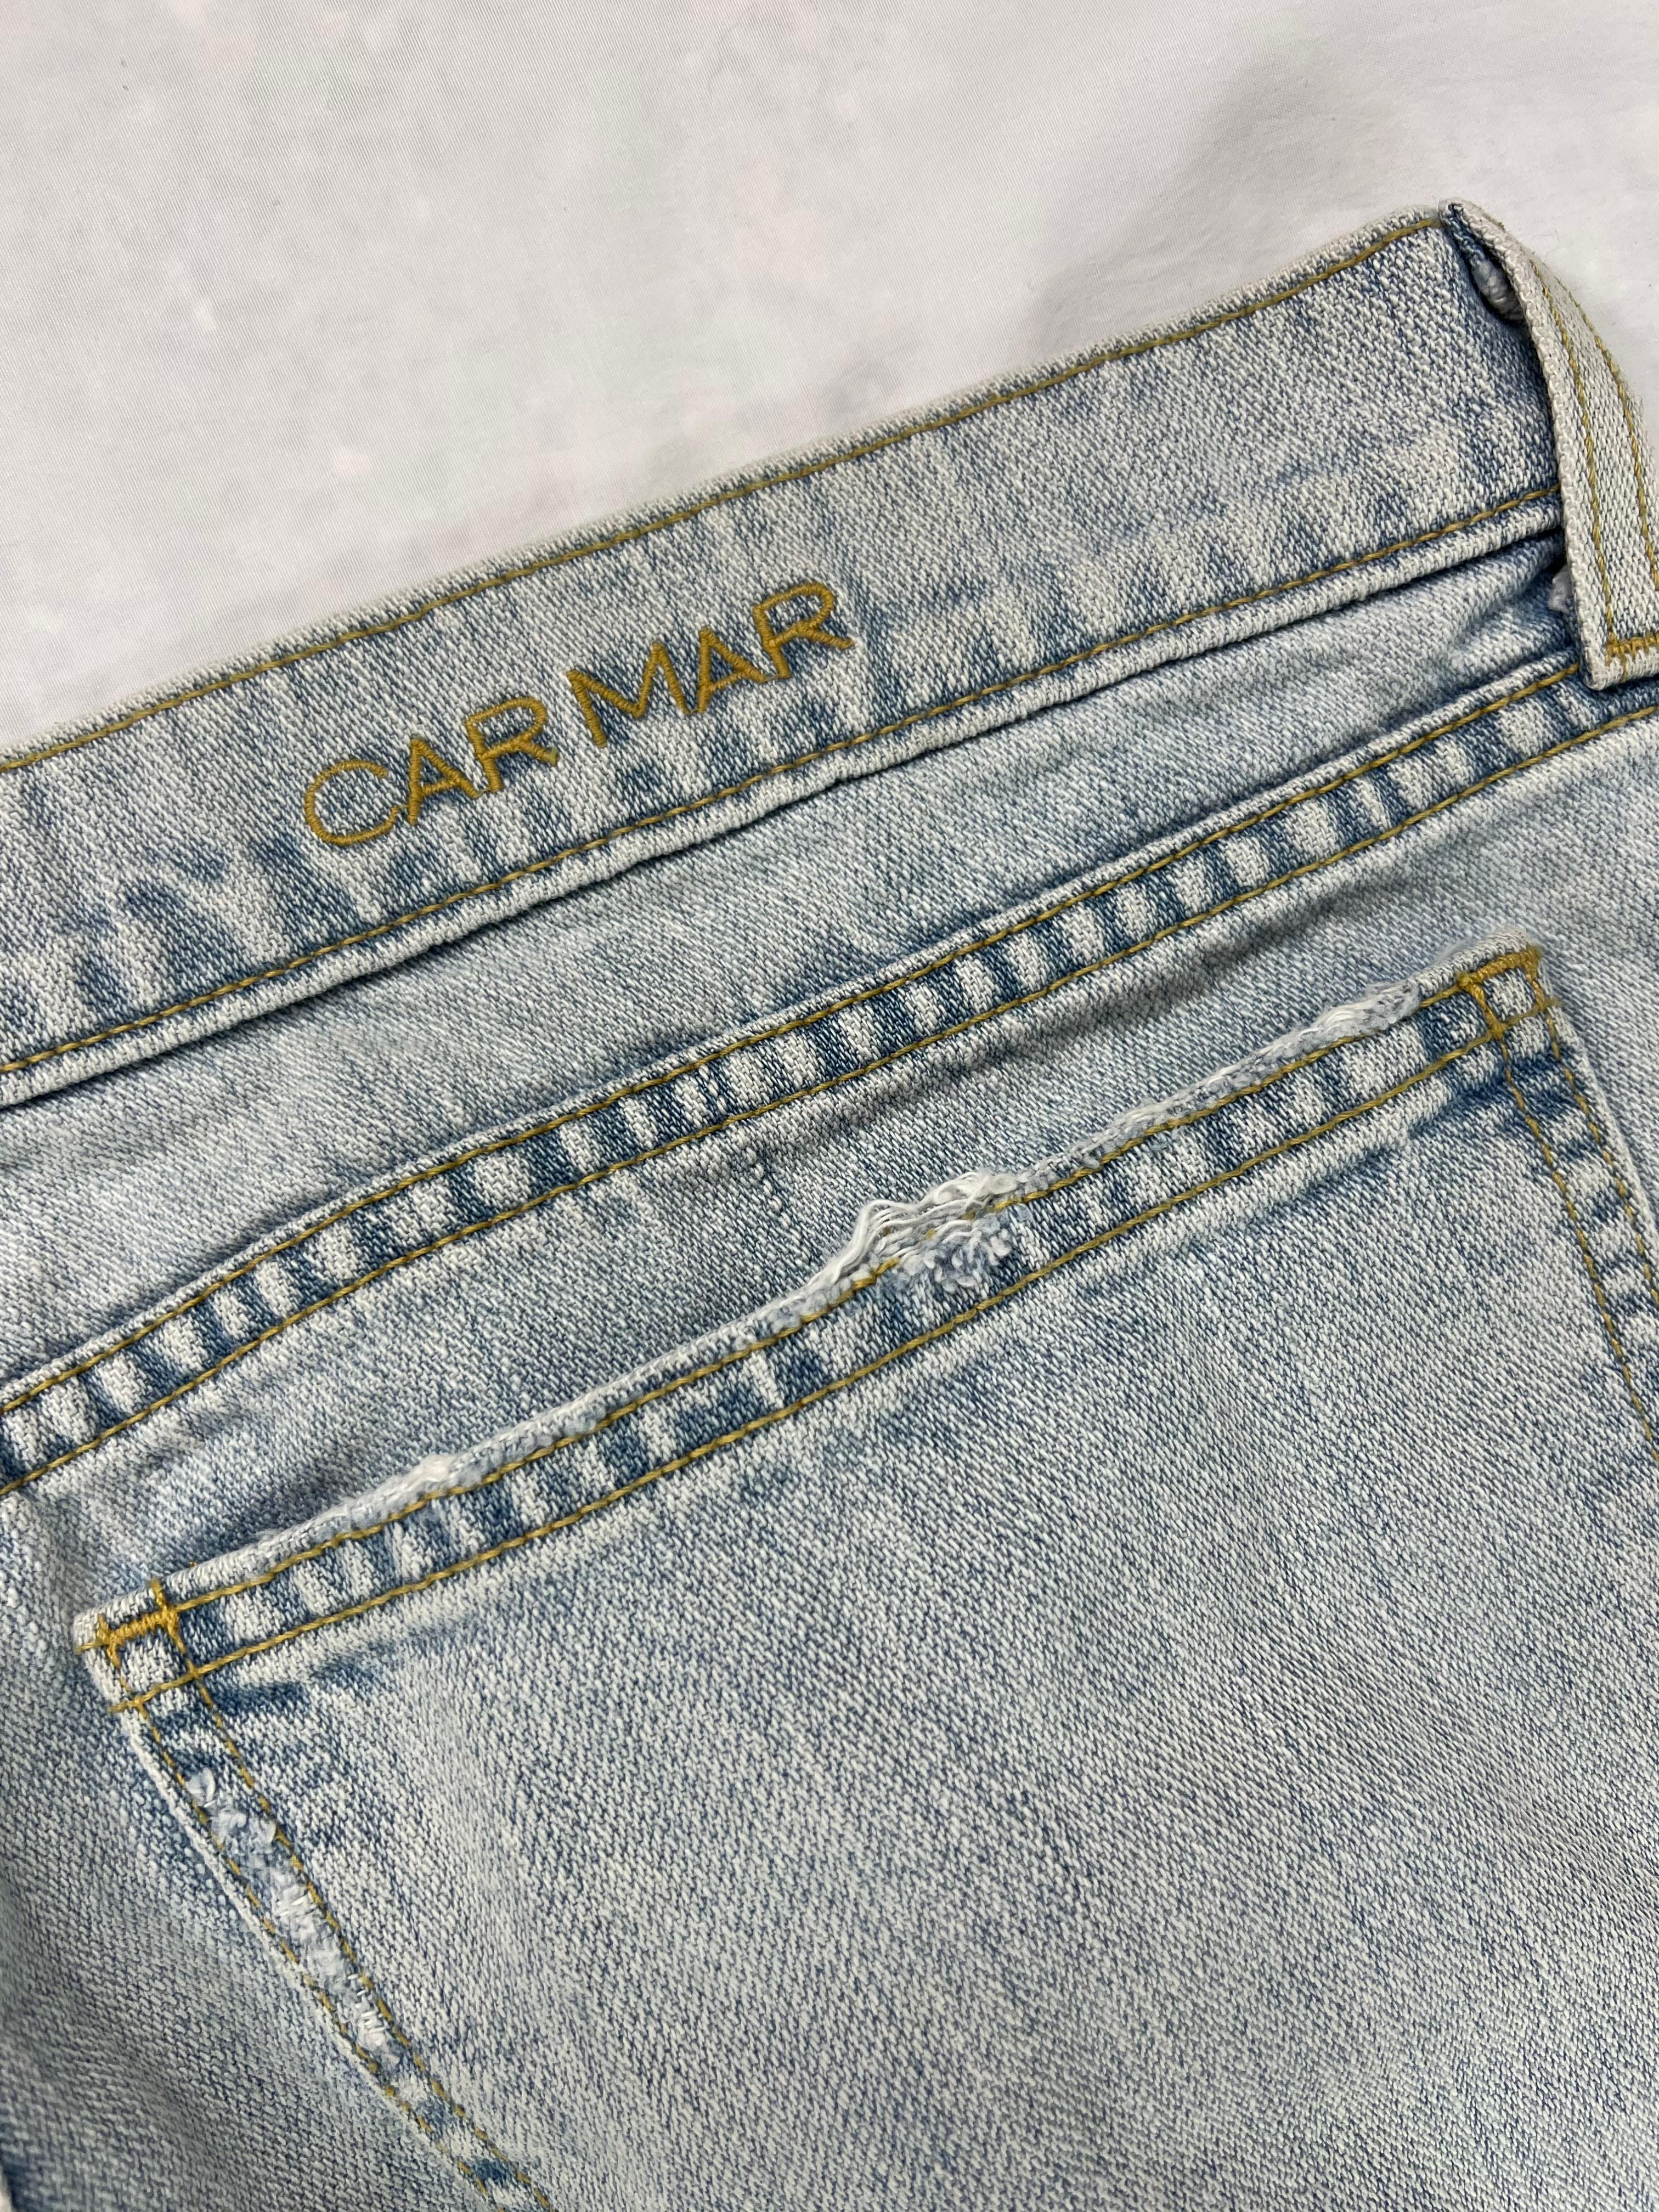 Einzelheiten zum Produkt:

Die Jeans hat eine helle Waschung, ein Distressed-Design auf der Vorderseite und eine gerade Beinform.